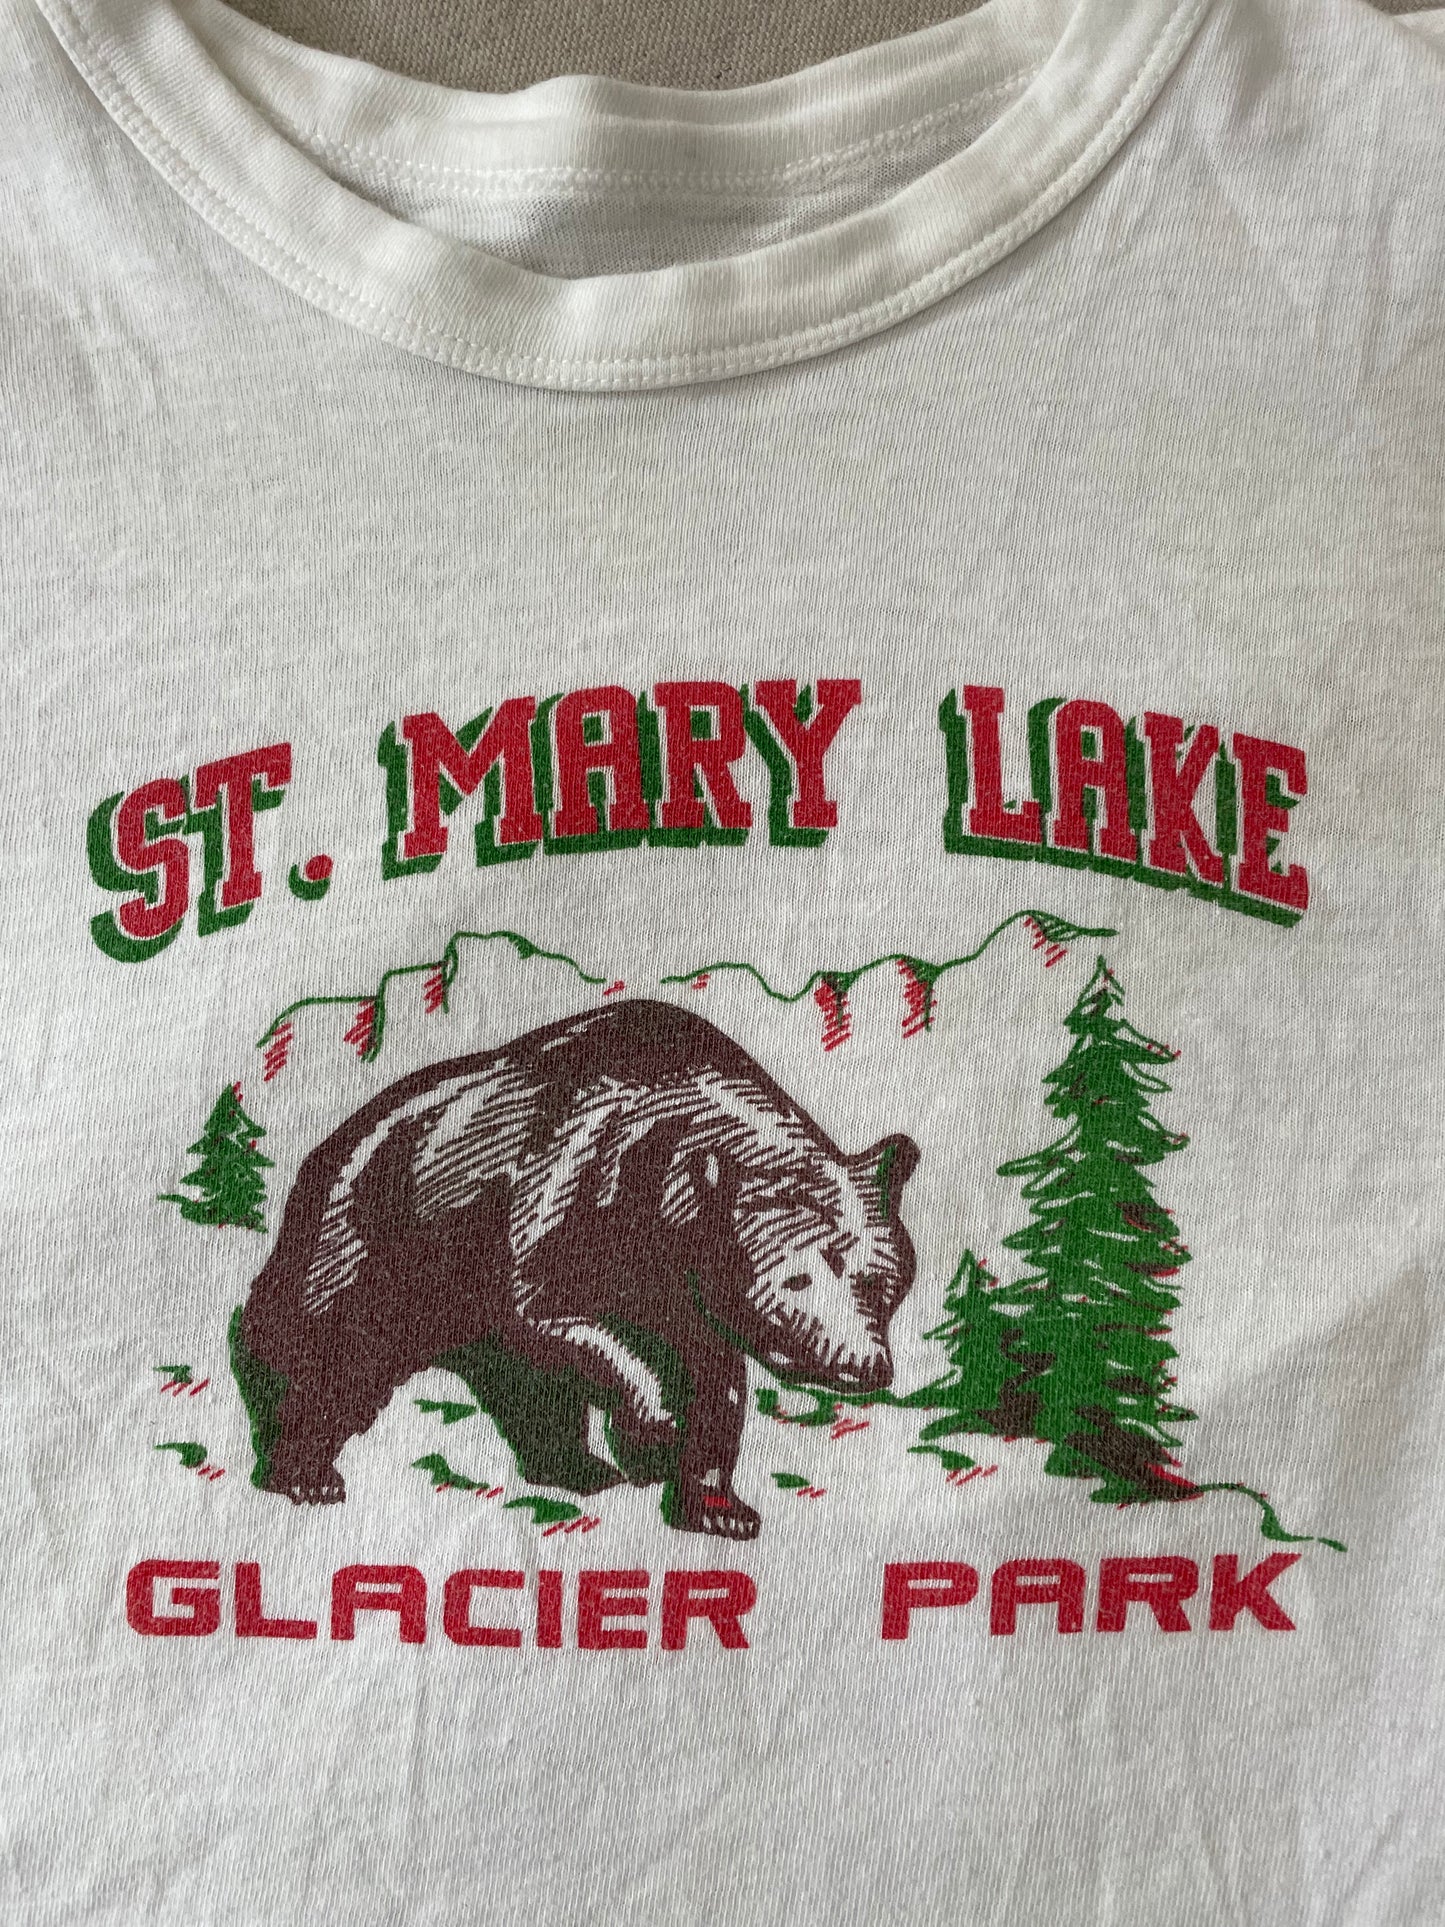 50s/60s St. Mary Lake, Glacier Park Tee